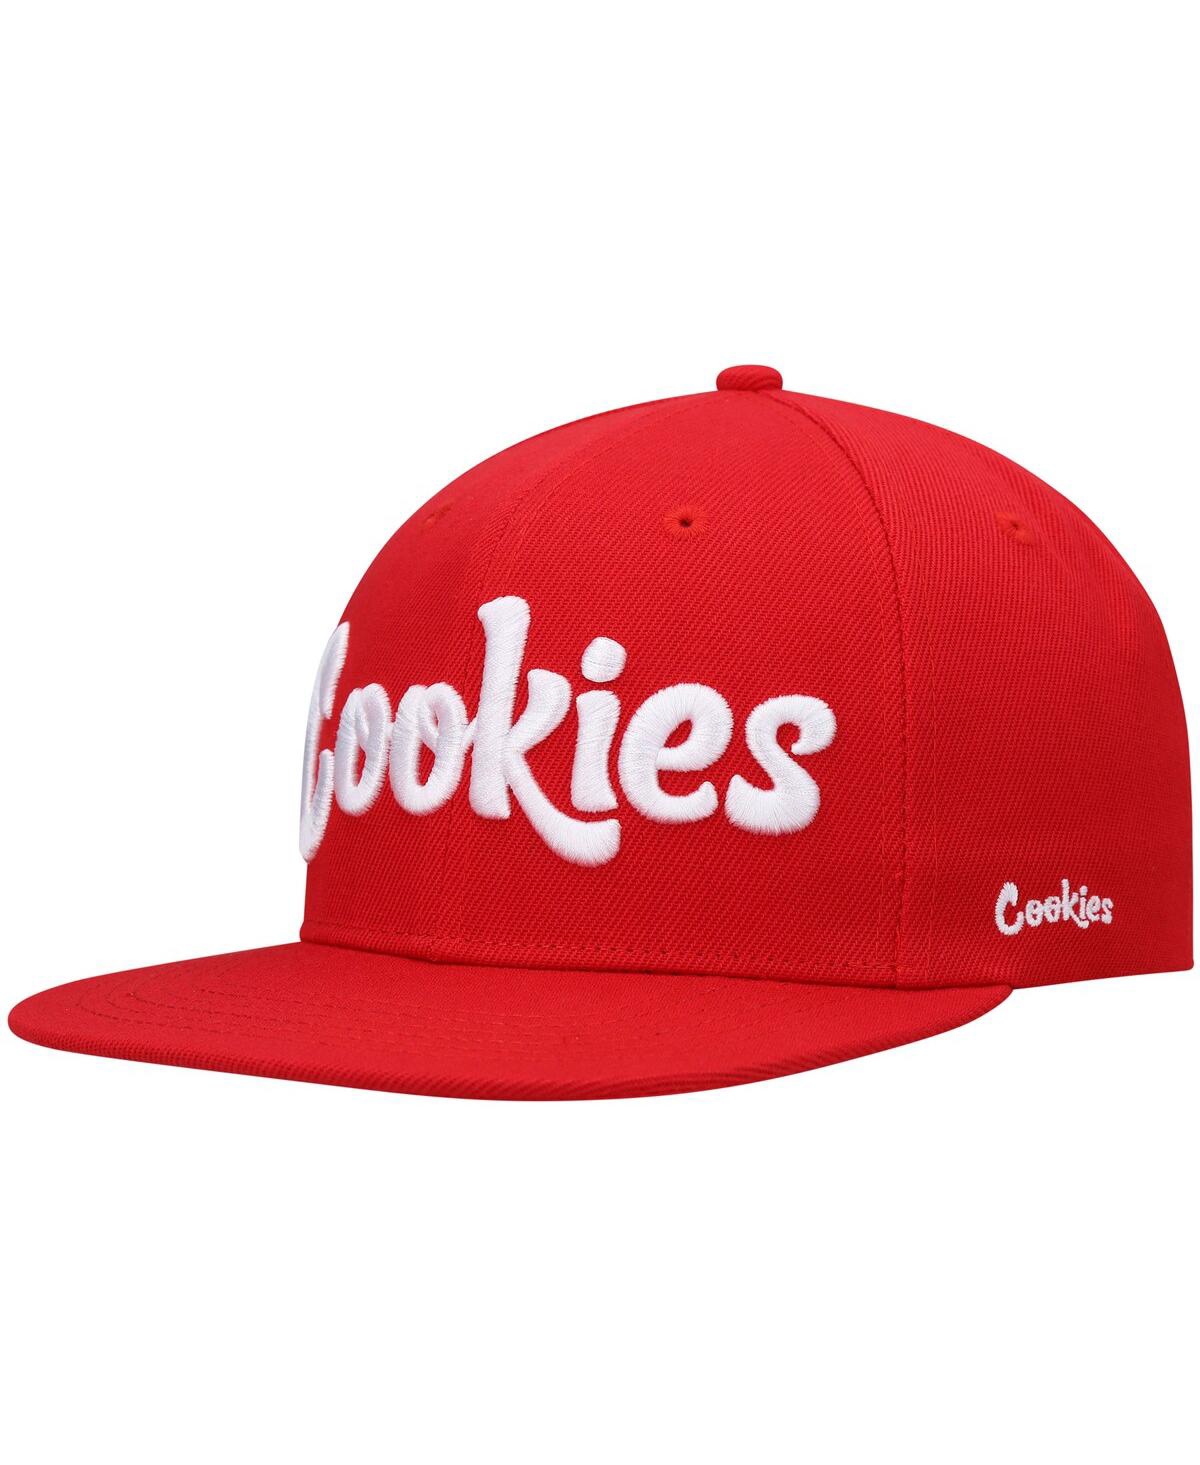 Cookies Men's  Red Original Mint Solid Snapback Hat